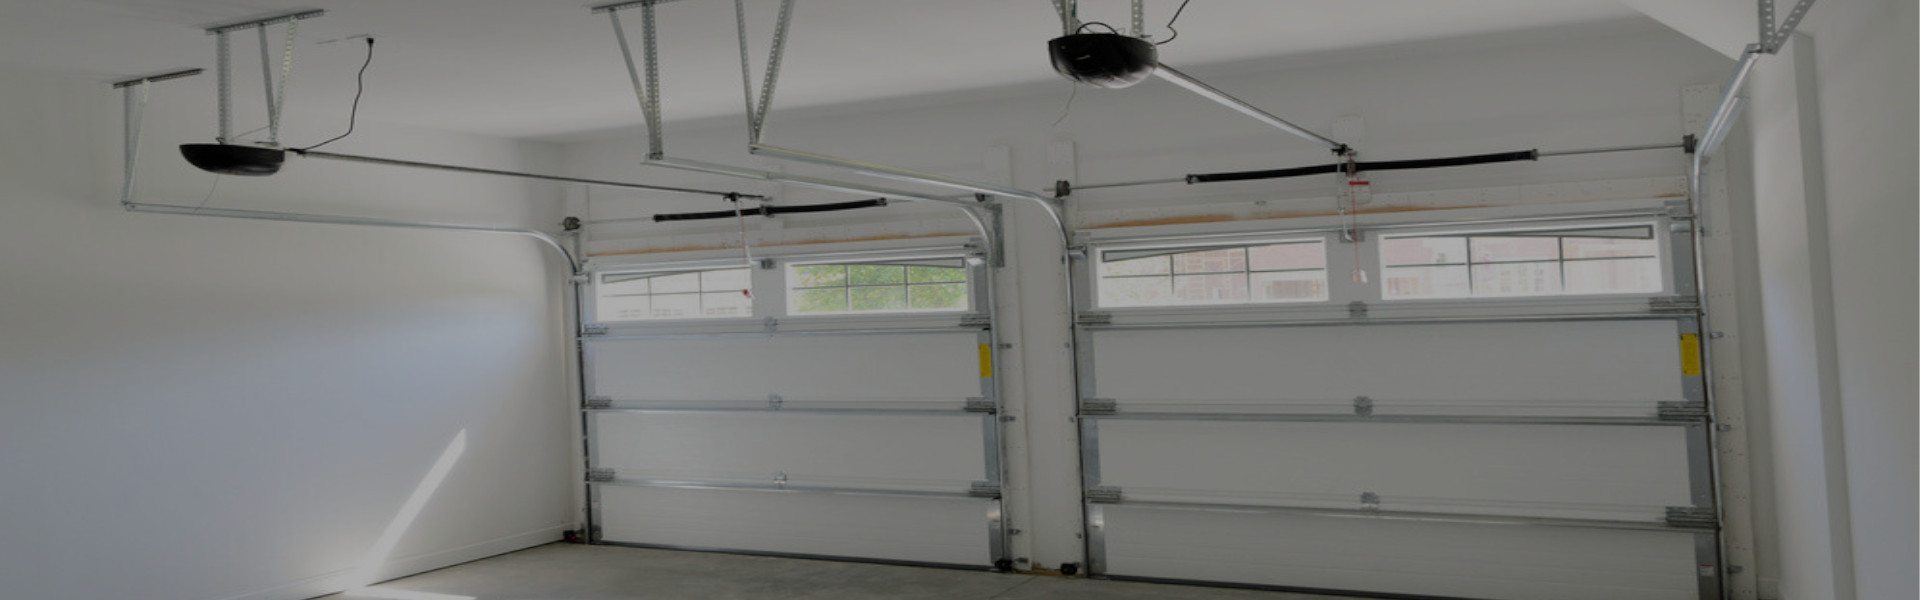 Slider Garage Door Repair, Glaziers in Raynes Park, South Wimbledon, SW20